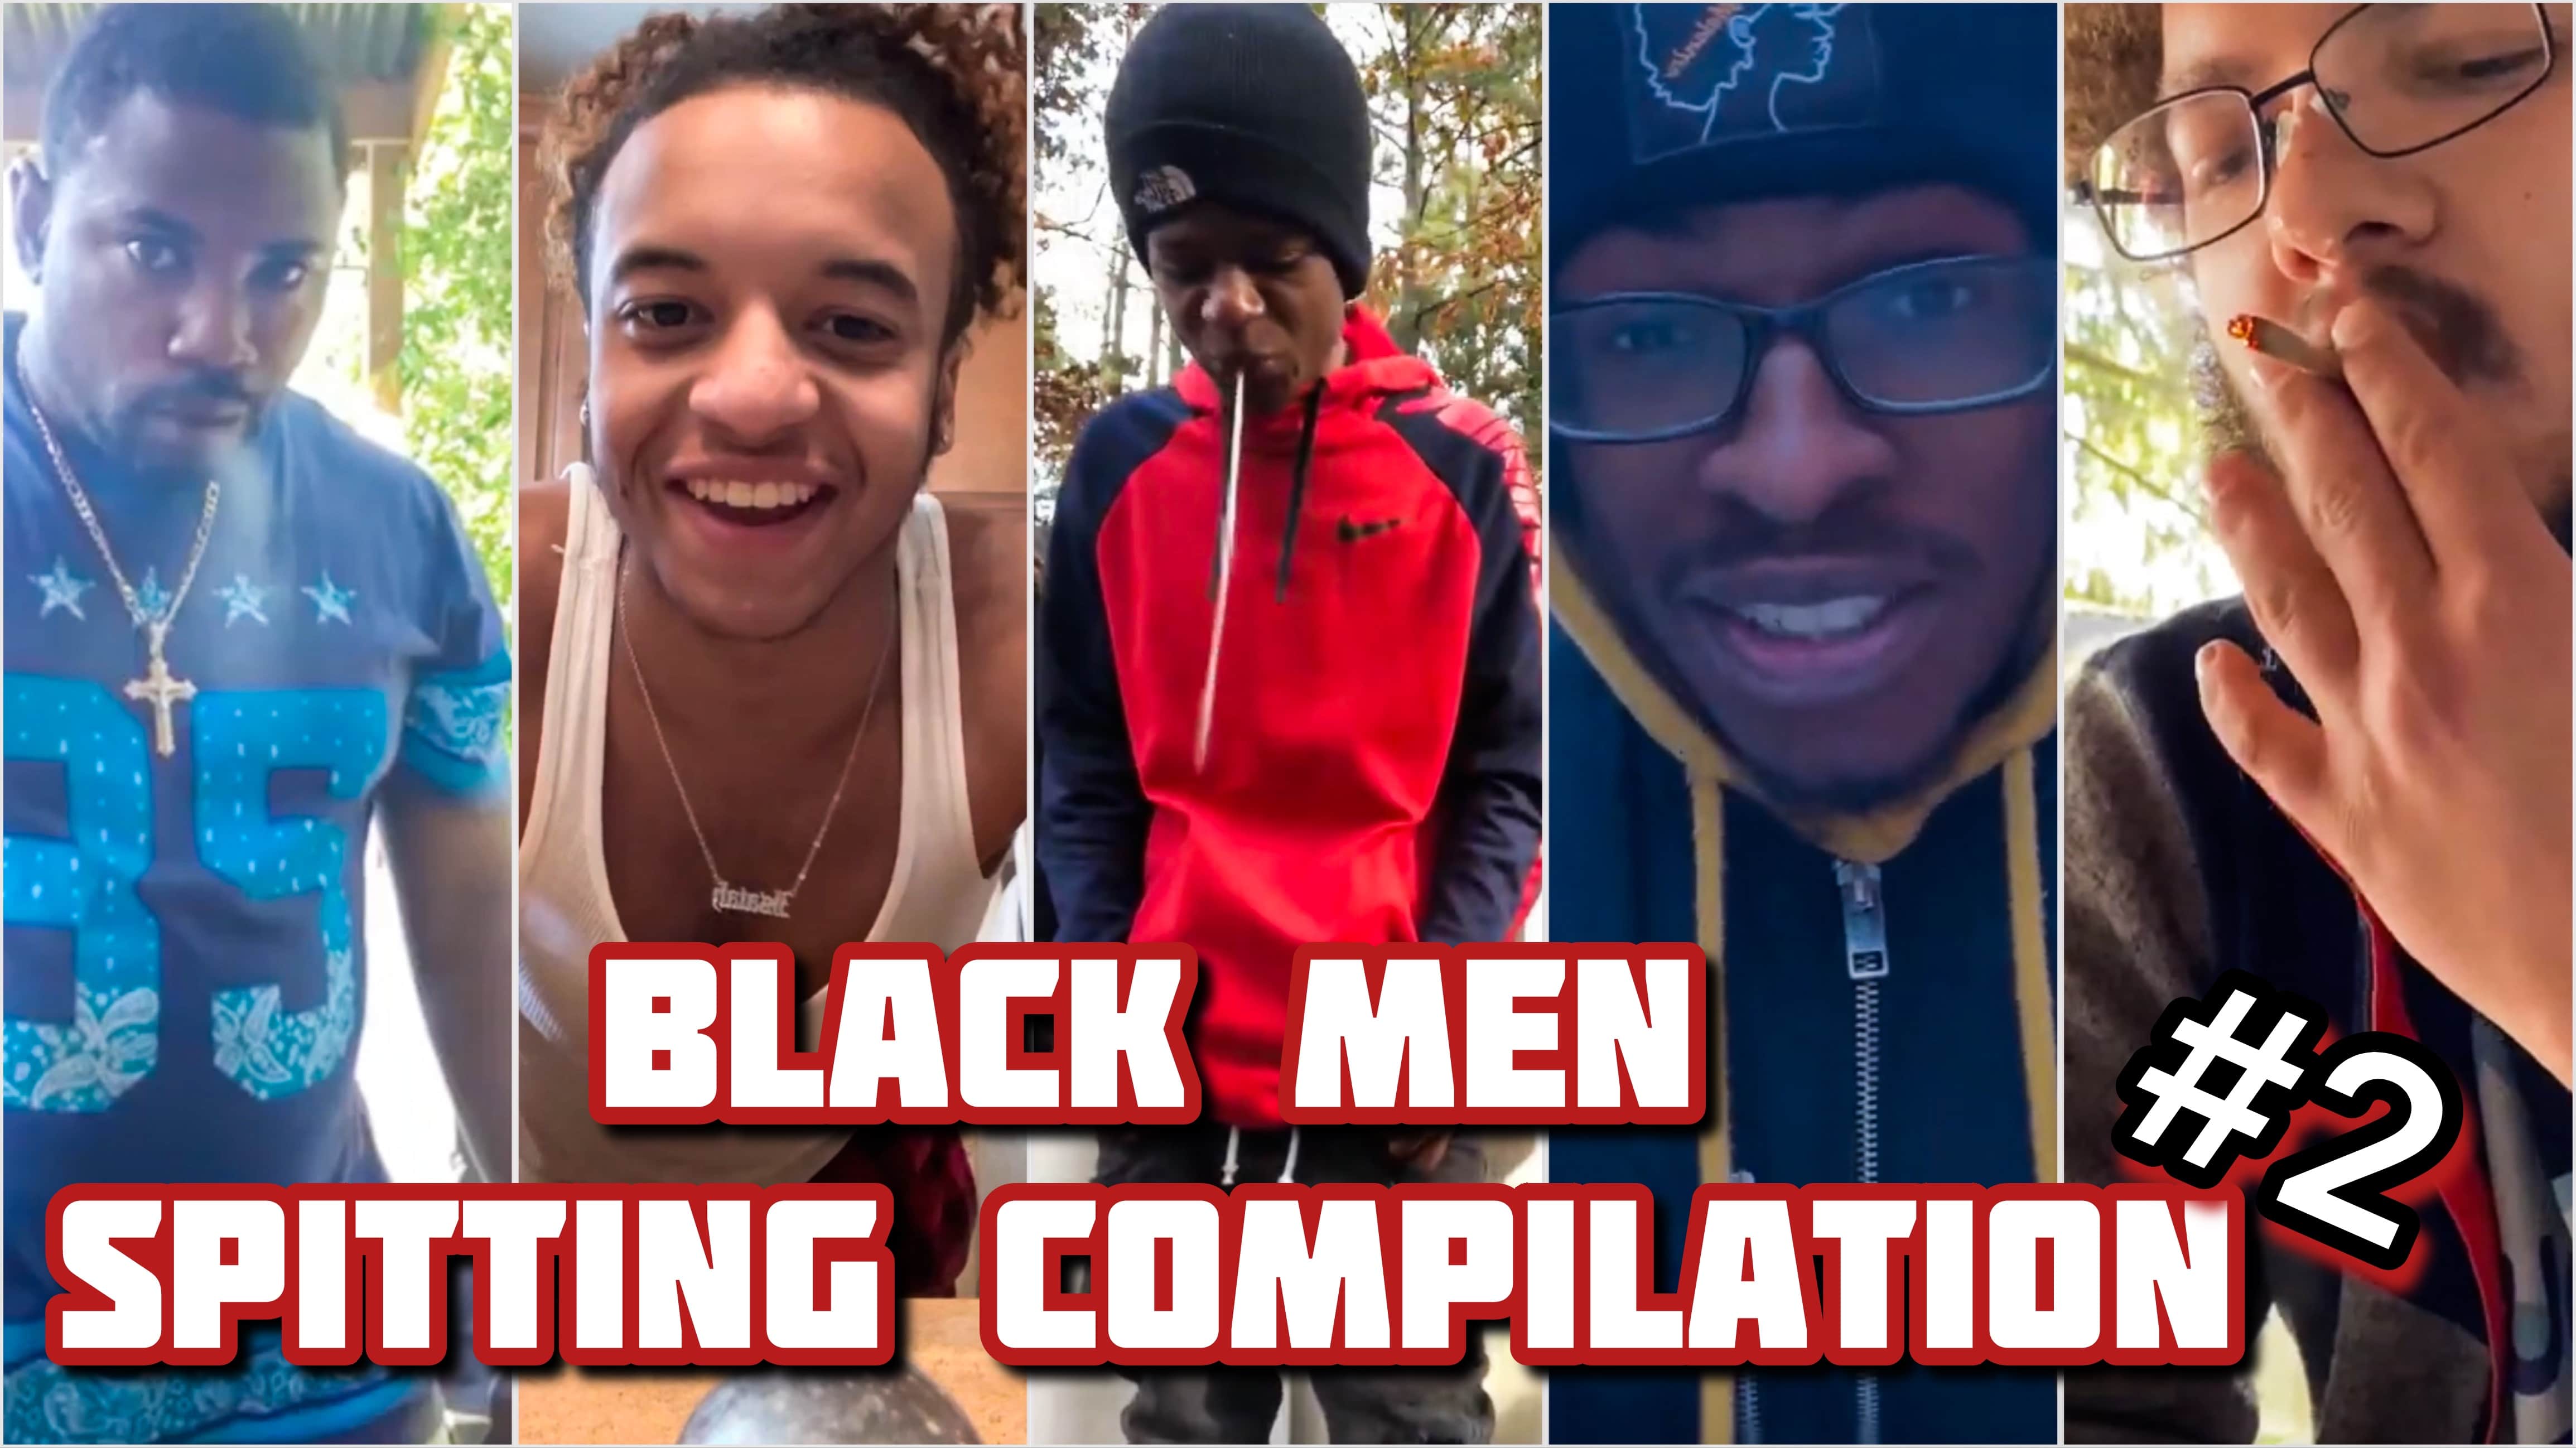 Black Men Spitting Compilation 2 (teaser)